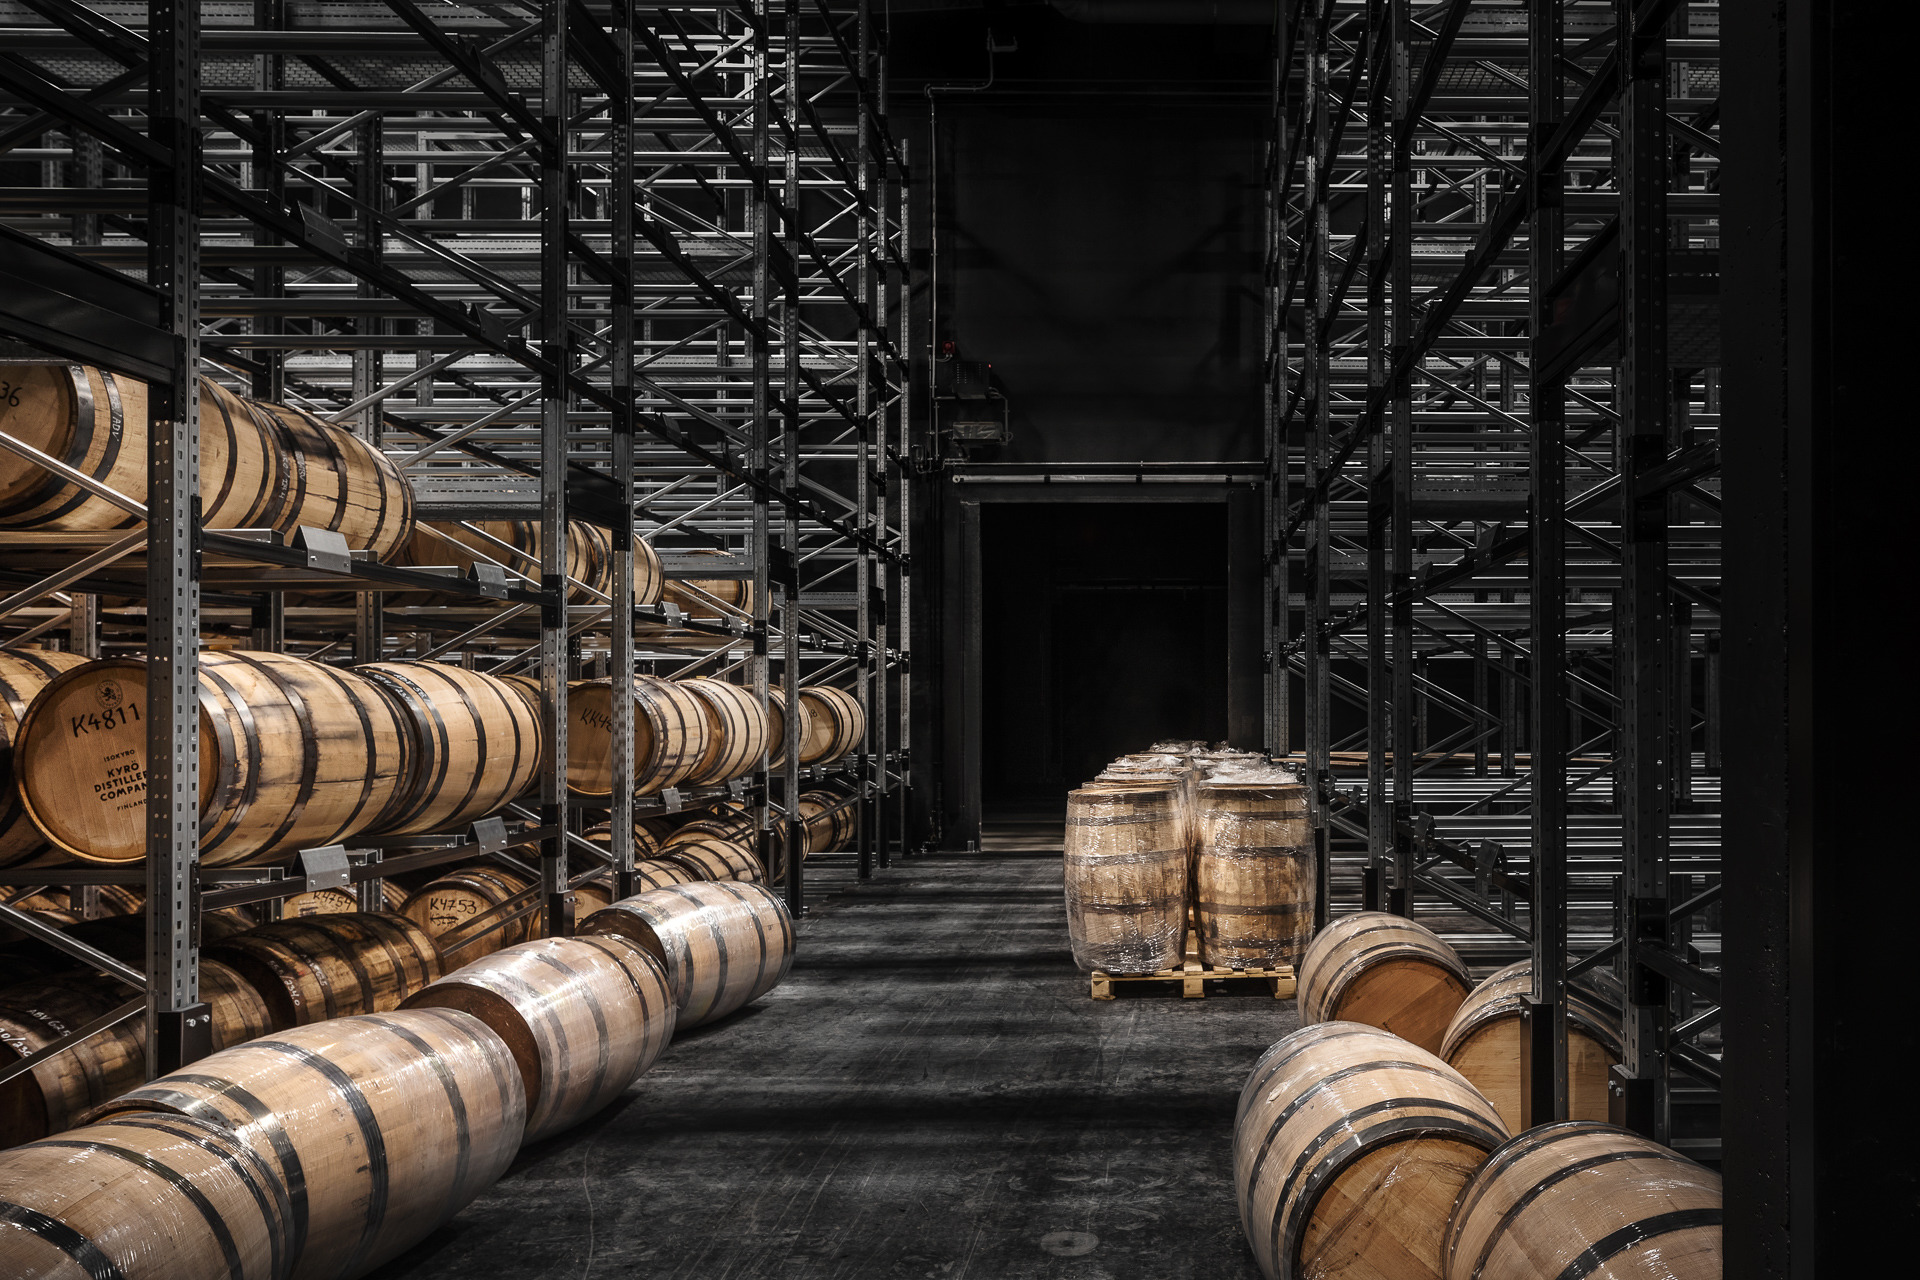 在世界上最北部杜松子酒和威士忌酿酒厂的看法。Cask Storage是生产过程的一部分：威士忌必须存放在橡木桶中至少三年。芬兰kyrö酿酒厂的1056平方米的黑色仓库位于森林中间，乍一看似乎与老烧焦的木板一起登上。Cask仓库的外立面受到典型区域木制谷仓的启发。